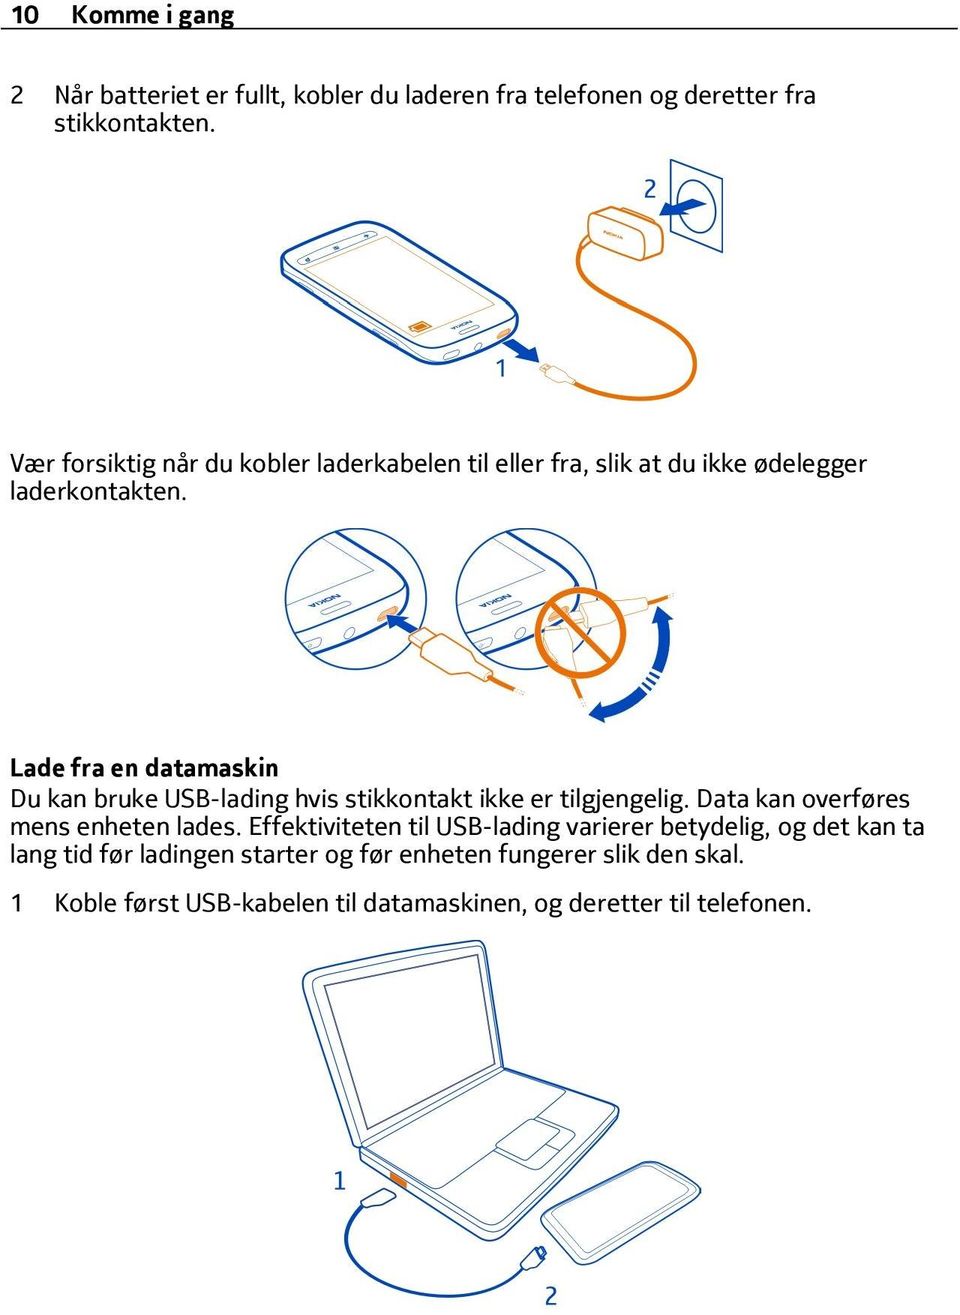 Lade fra en datamaskin Du kan bruke USB-lading hvis stikkontakt ikke er tilgjengelig. Data kan overføres mens enheten lades.